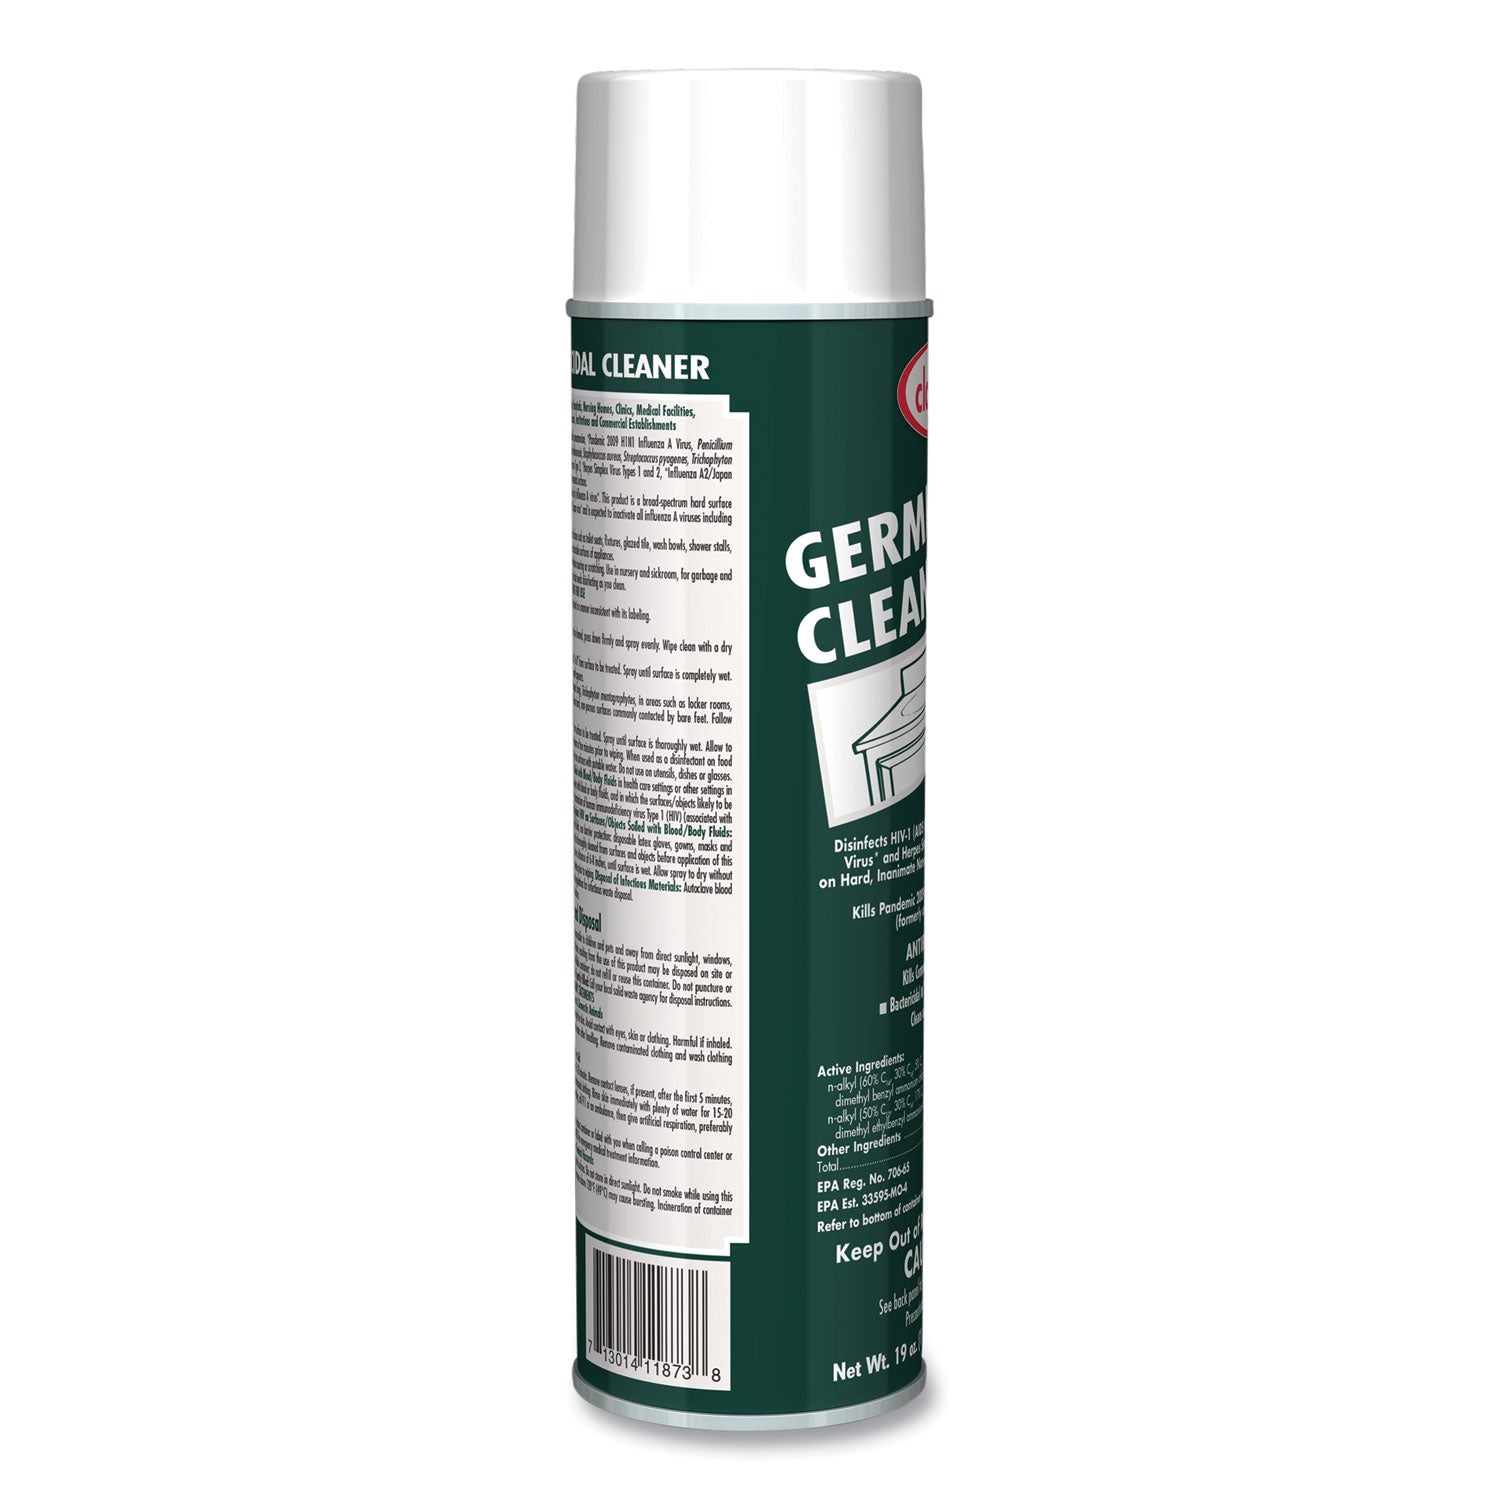 germicidal-cleaner-floral-scent-19-oz-aerosol-spray_cgc873ea - 3